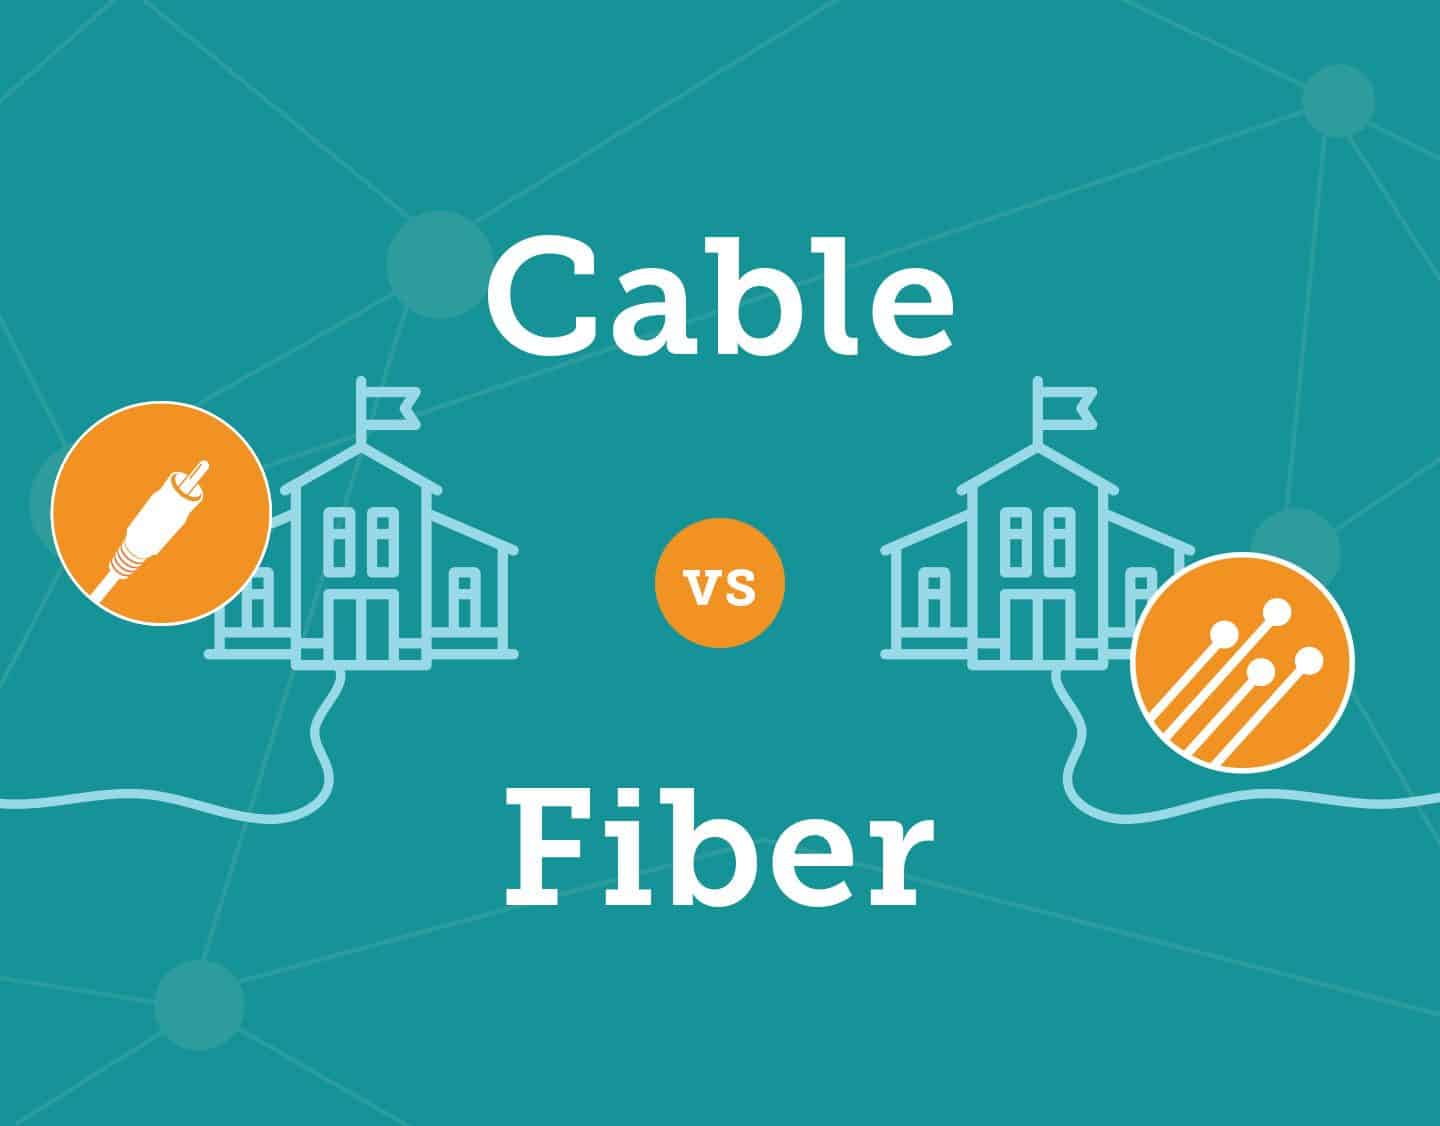 Cable vs Fiber graphic